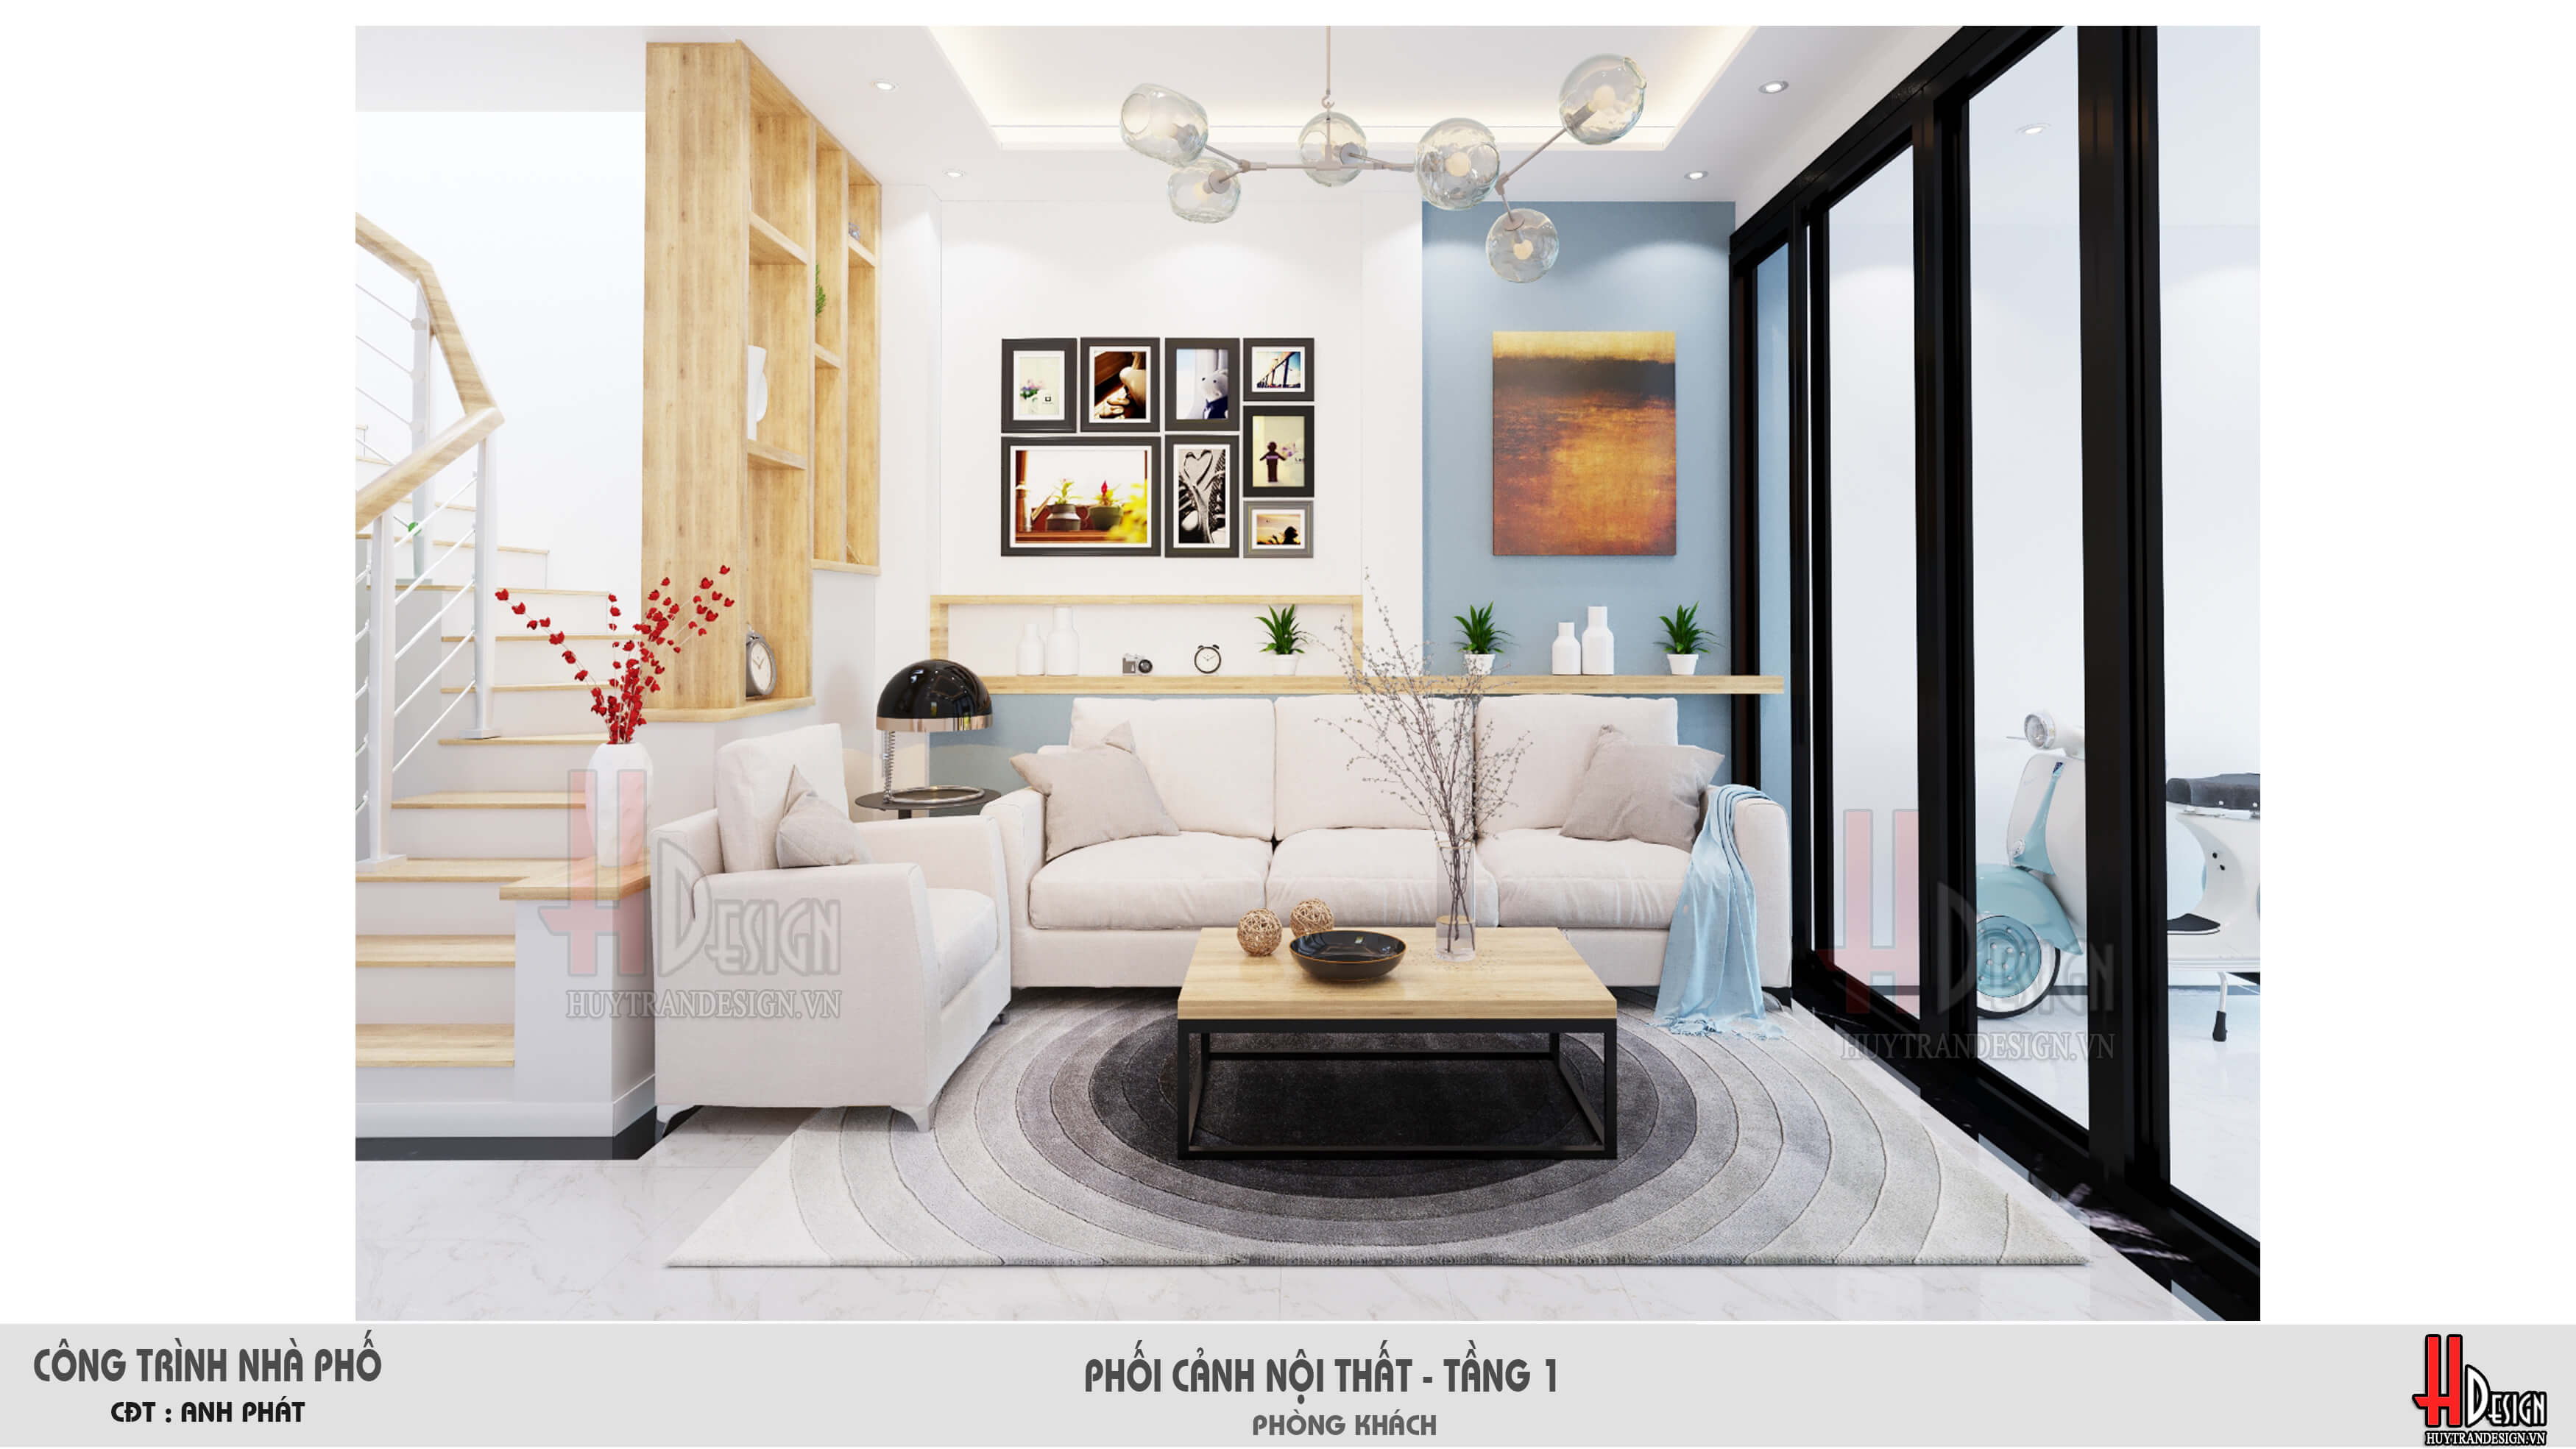 6 mẫu hình ảnh nội thất nhà đẹp theo phong cách hiện đại  HomeHome